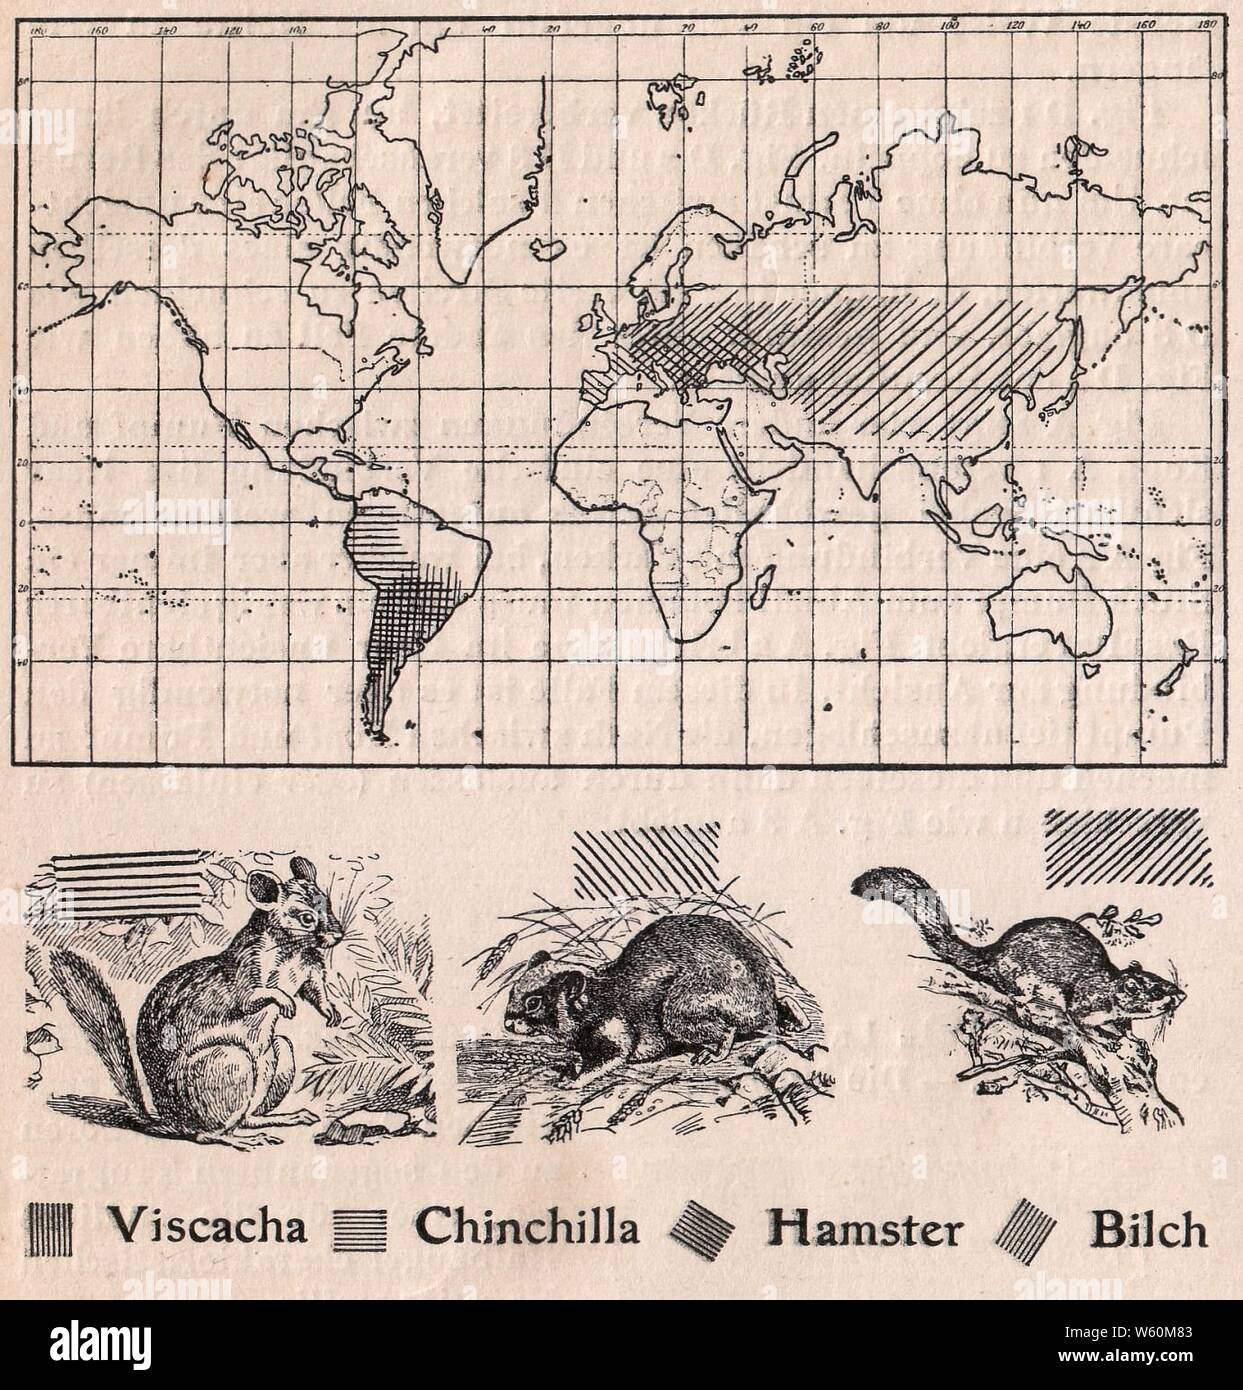 Das Kürschner-Handwerk, II. Auflage 3. Teil, S. 60, Weltkarte der Verbreitung Viscacha, Chinchilla, criceto und Bilch (1910). Foto Stock